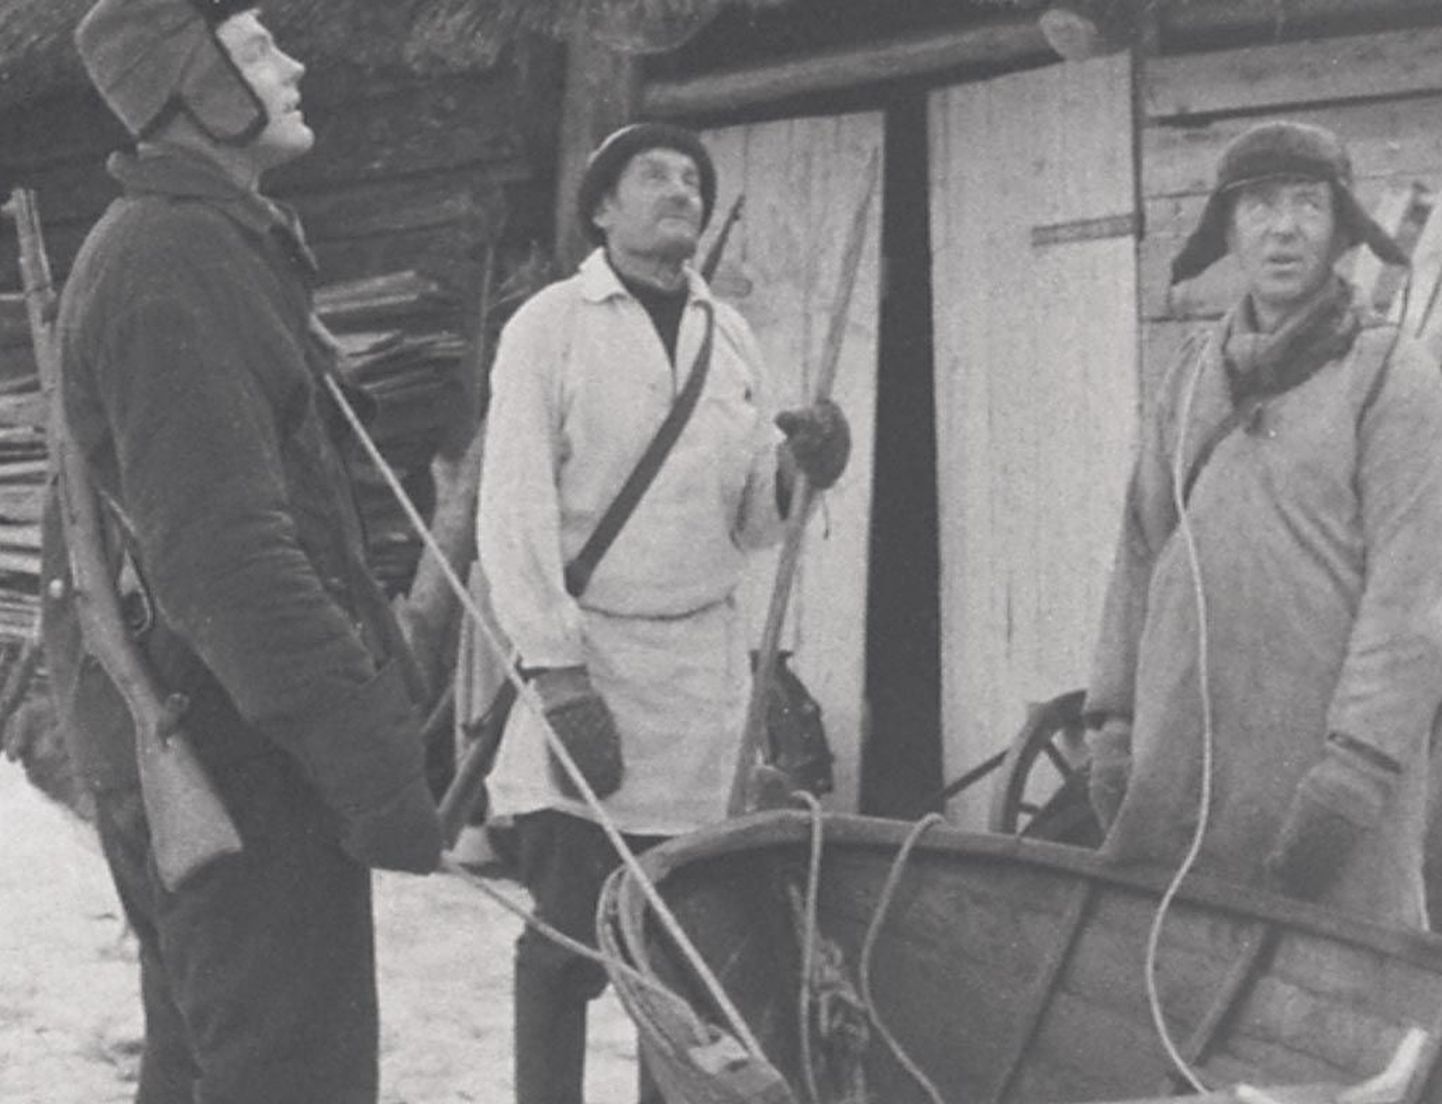 Kolm Ruhnu hülgekütti, filmi “Ülgepüüdäjäd” peategelast, kelle argipäeva kajastab Mark Soosaare esimene tummfilm.